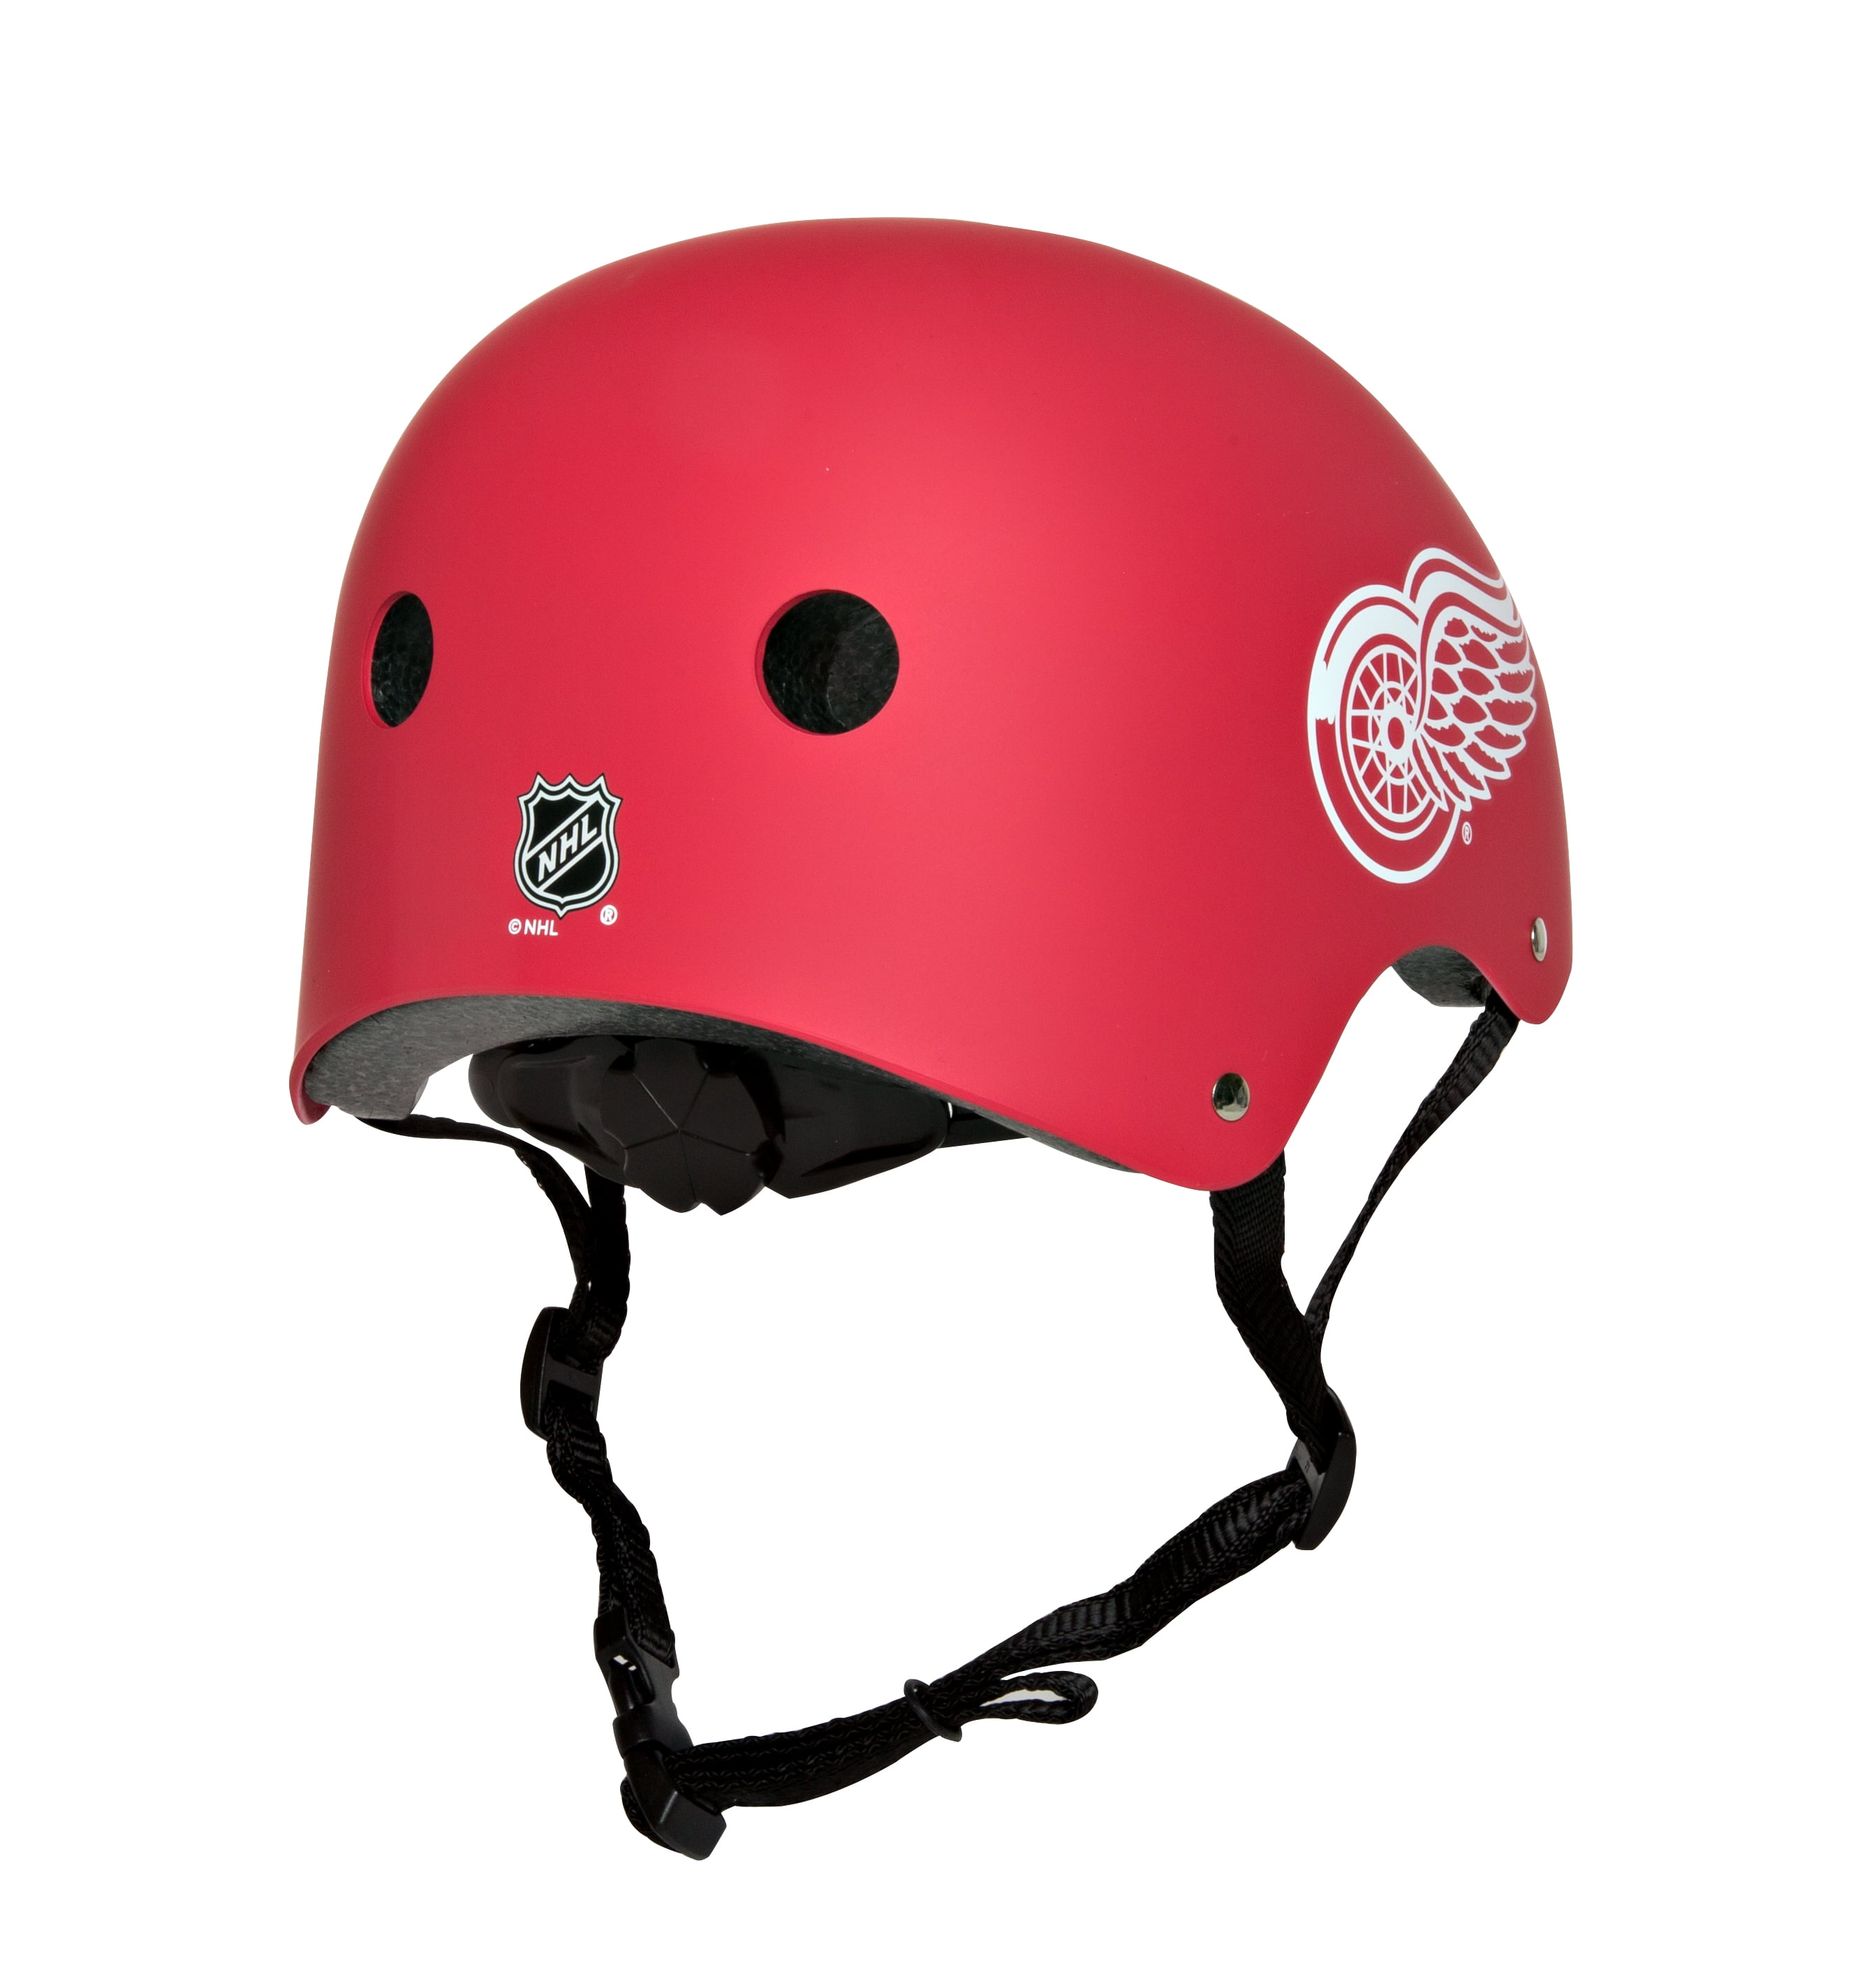 Size S - TRUE Dynamic 9 Pro Red Helmet - Detroit Red Wings - Pro